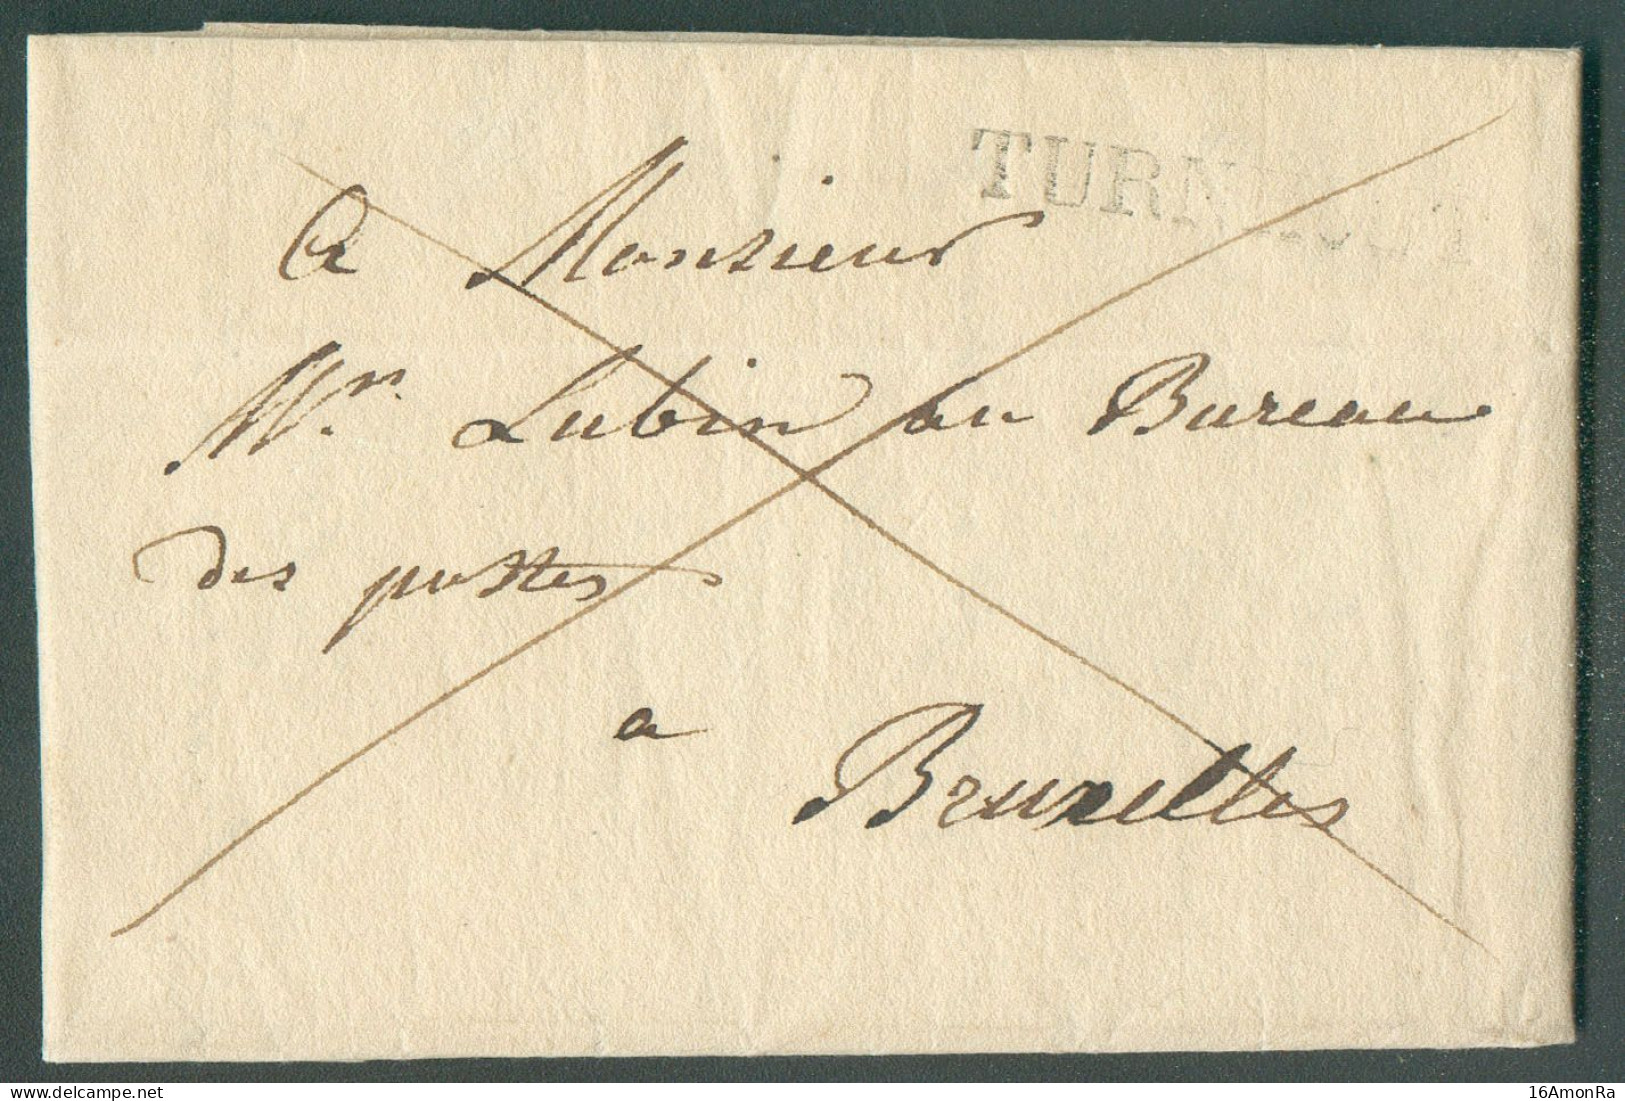 LAC De TURNHOUT le 4 Septembre 1828 Adressée En Franchise De Port à Mr. Lubin, Au Bureau De Postes à Bruxelles.  Belle F - 1815-1830 (Dutch Period)